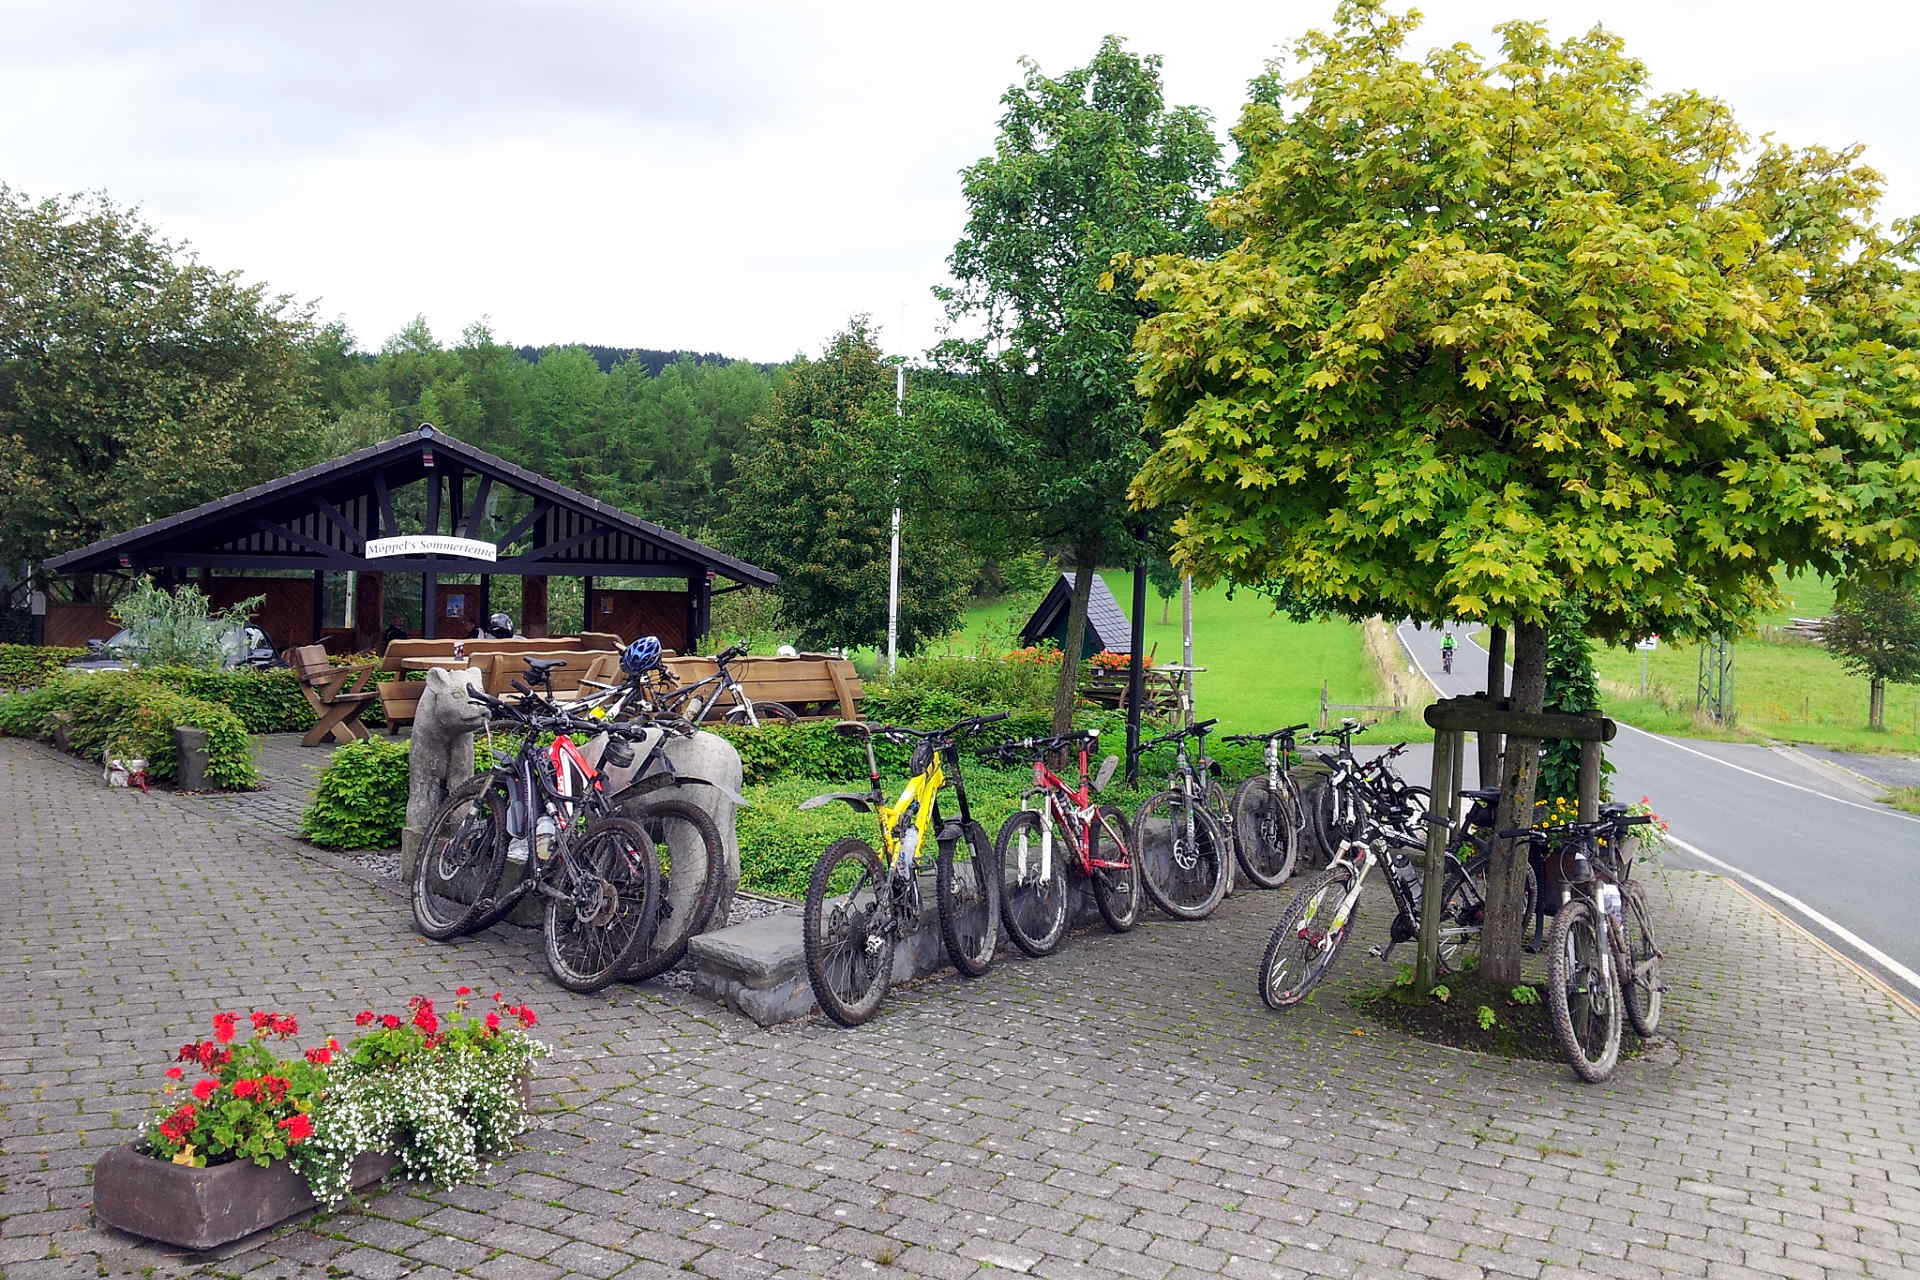 Der Landgasthof Rademacher - gern genutzter "Roadstop" bei den Radfahrern. Bild: altais.de